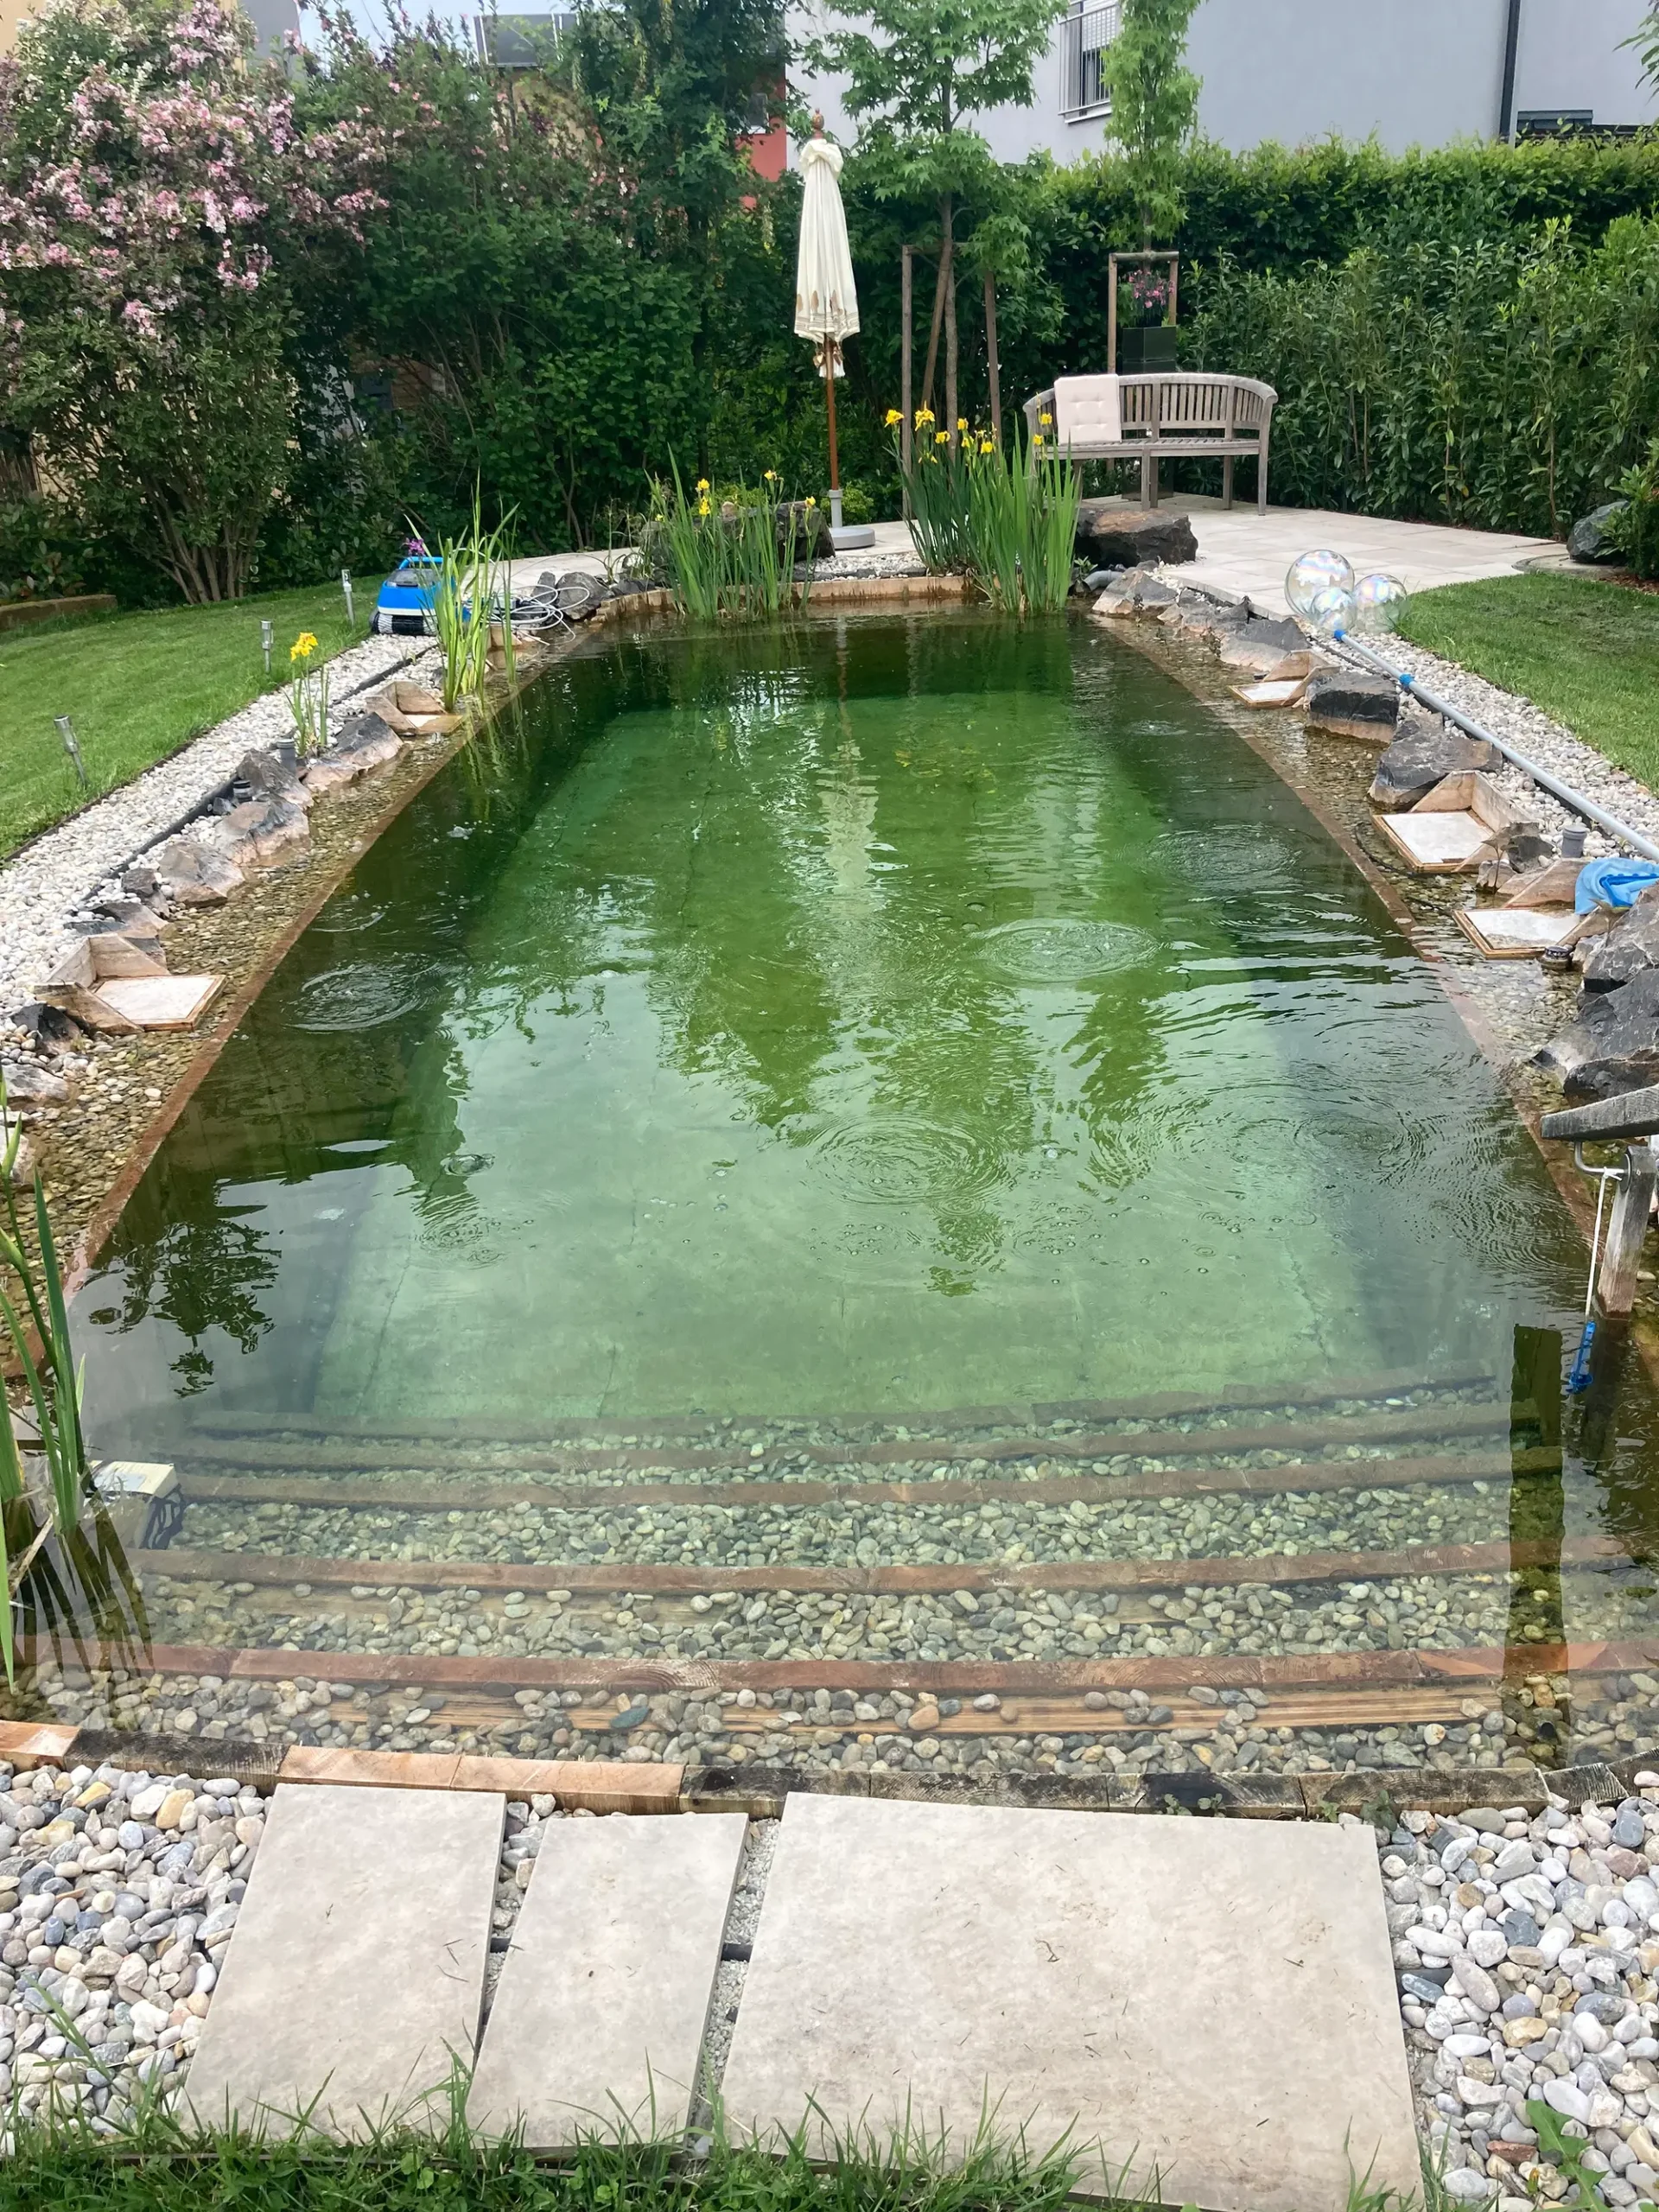 Foto eines Schwimmteichs in einem Garten in Leibnitz. Eine Hecke mit einigen Bäumen umgibt den Teich. In der Mitte des Bildes befindet sich ein mit Steinen und Blumen eingefasster Teich, dahinter steht ein Schirm mit einer Sitzbank.